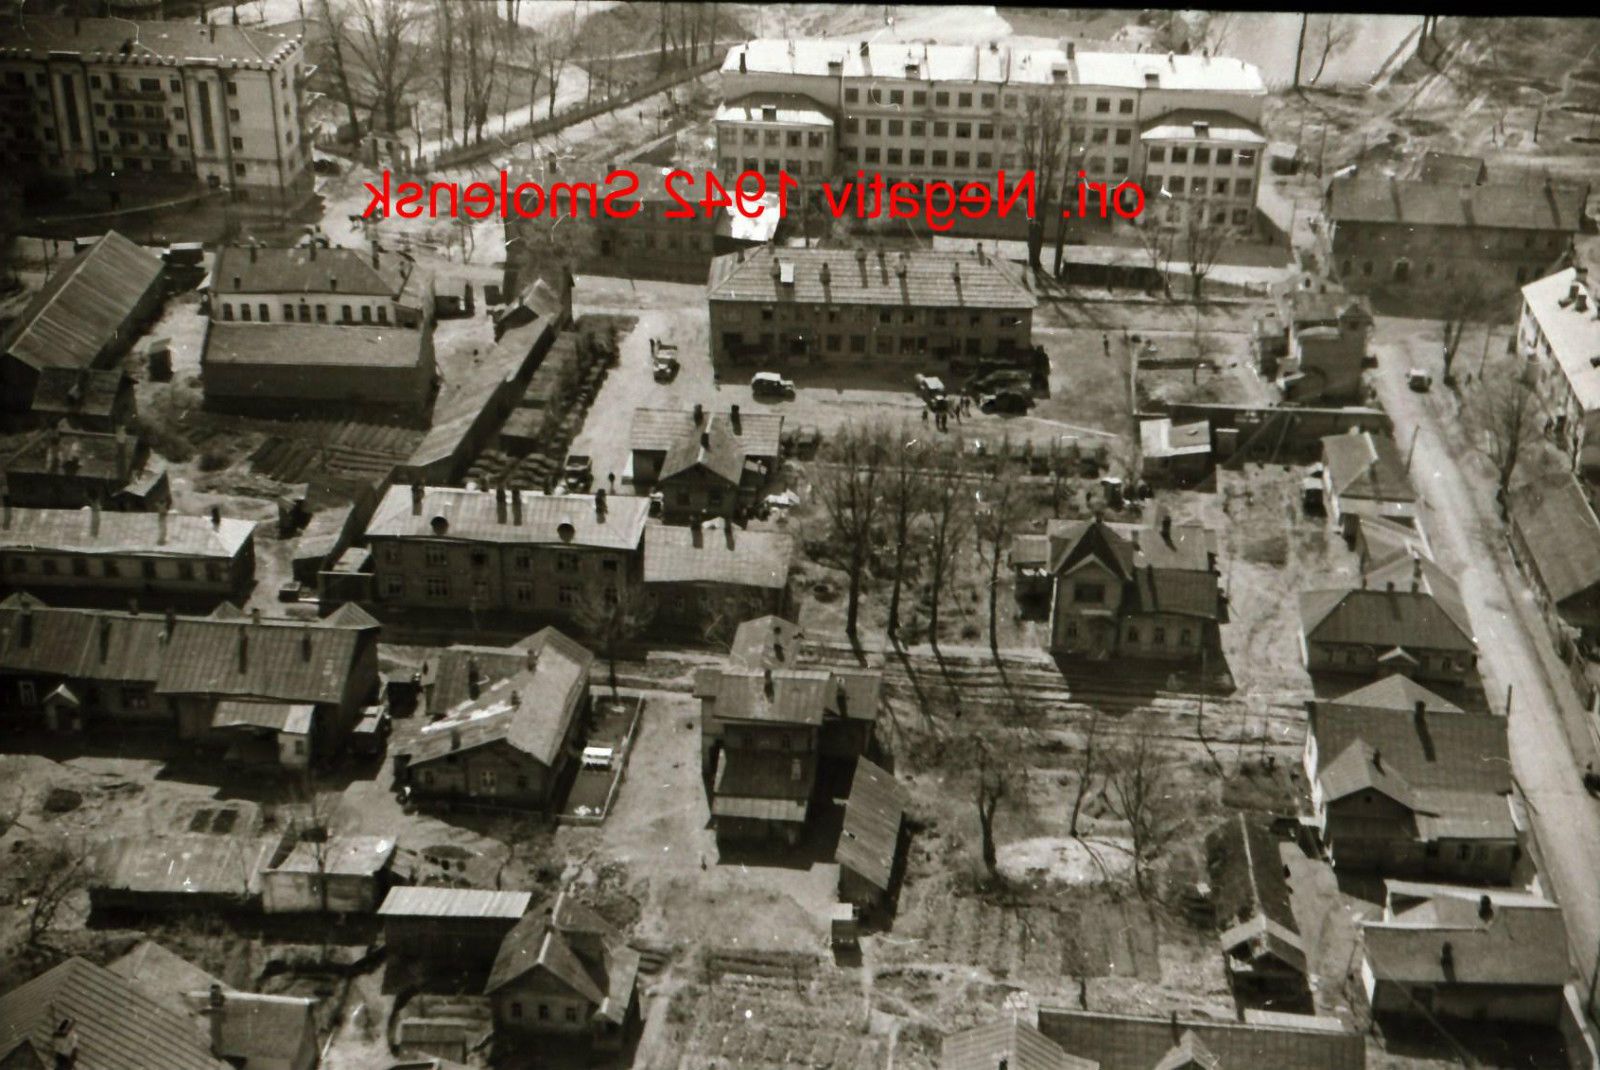 Foto 2 WK, orig. negativ, Ostfront,Smolensk, Luftaufnahme, Gebäude, WH Fahrzeug.jpg